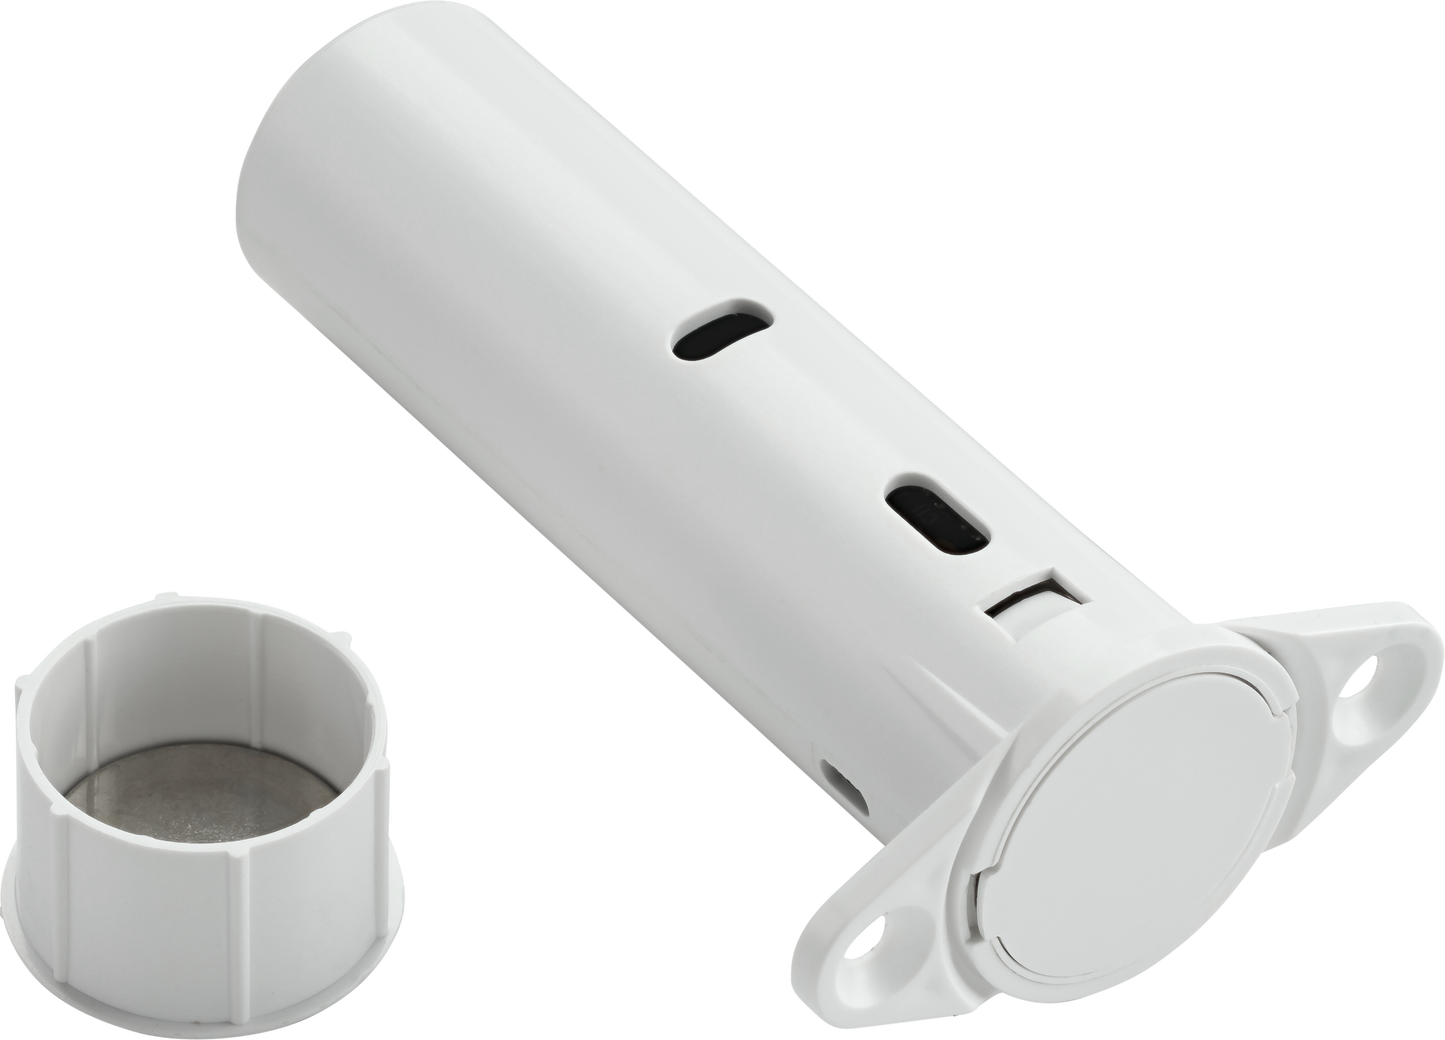 PowerG Hidden Door Sensor in White or Clear